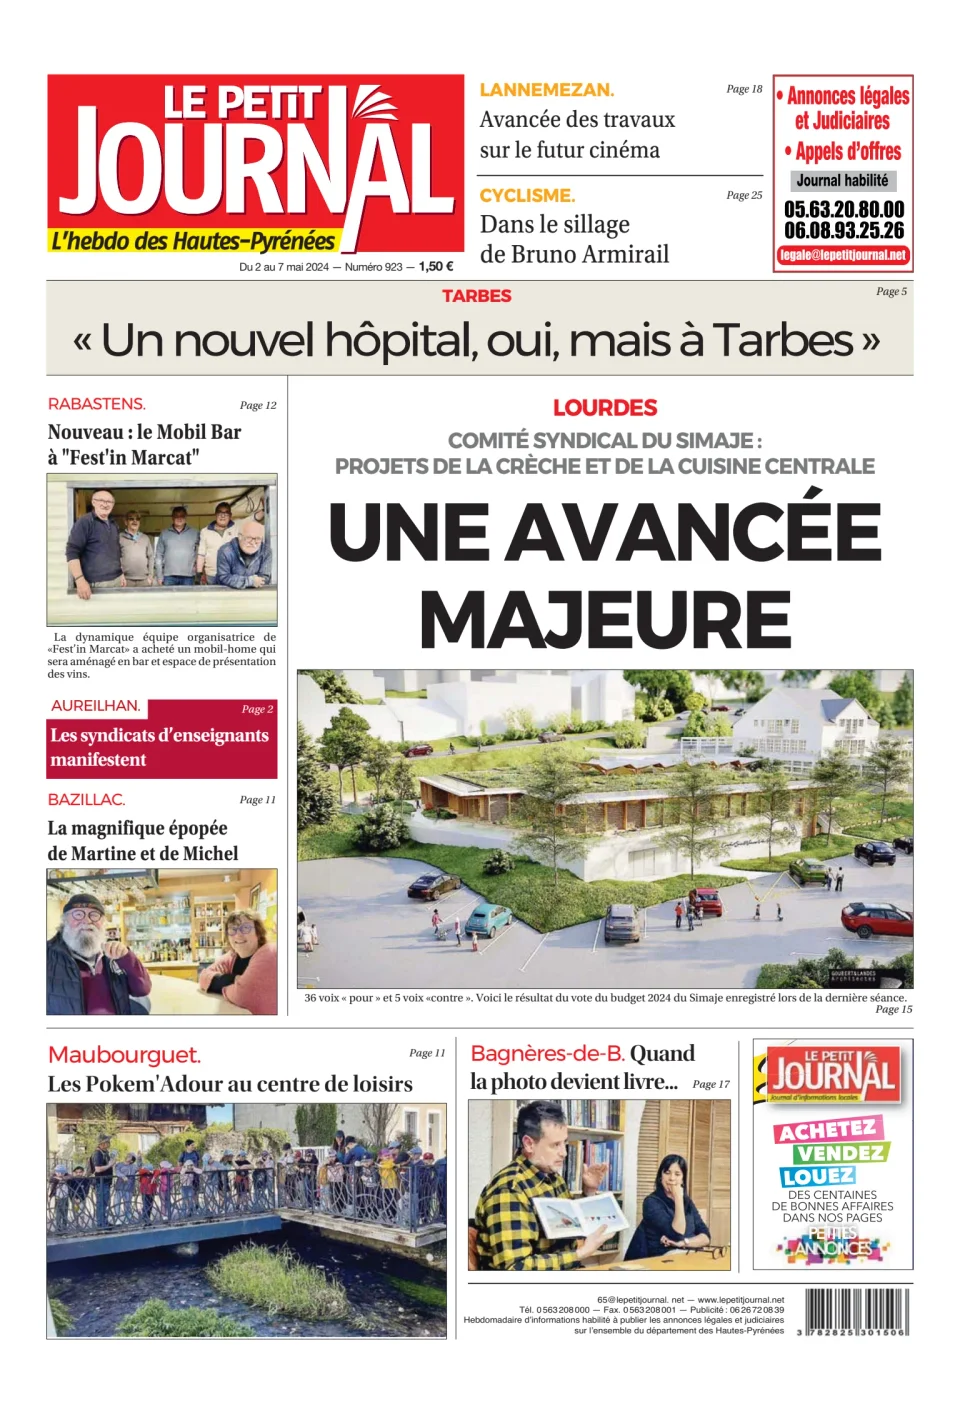 Le Petit Journal - L’hebdo des Hautes-Pyrénées